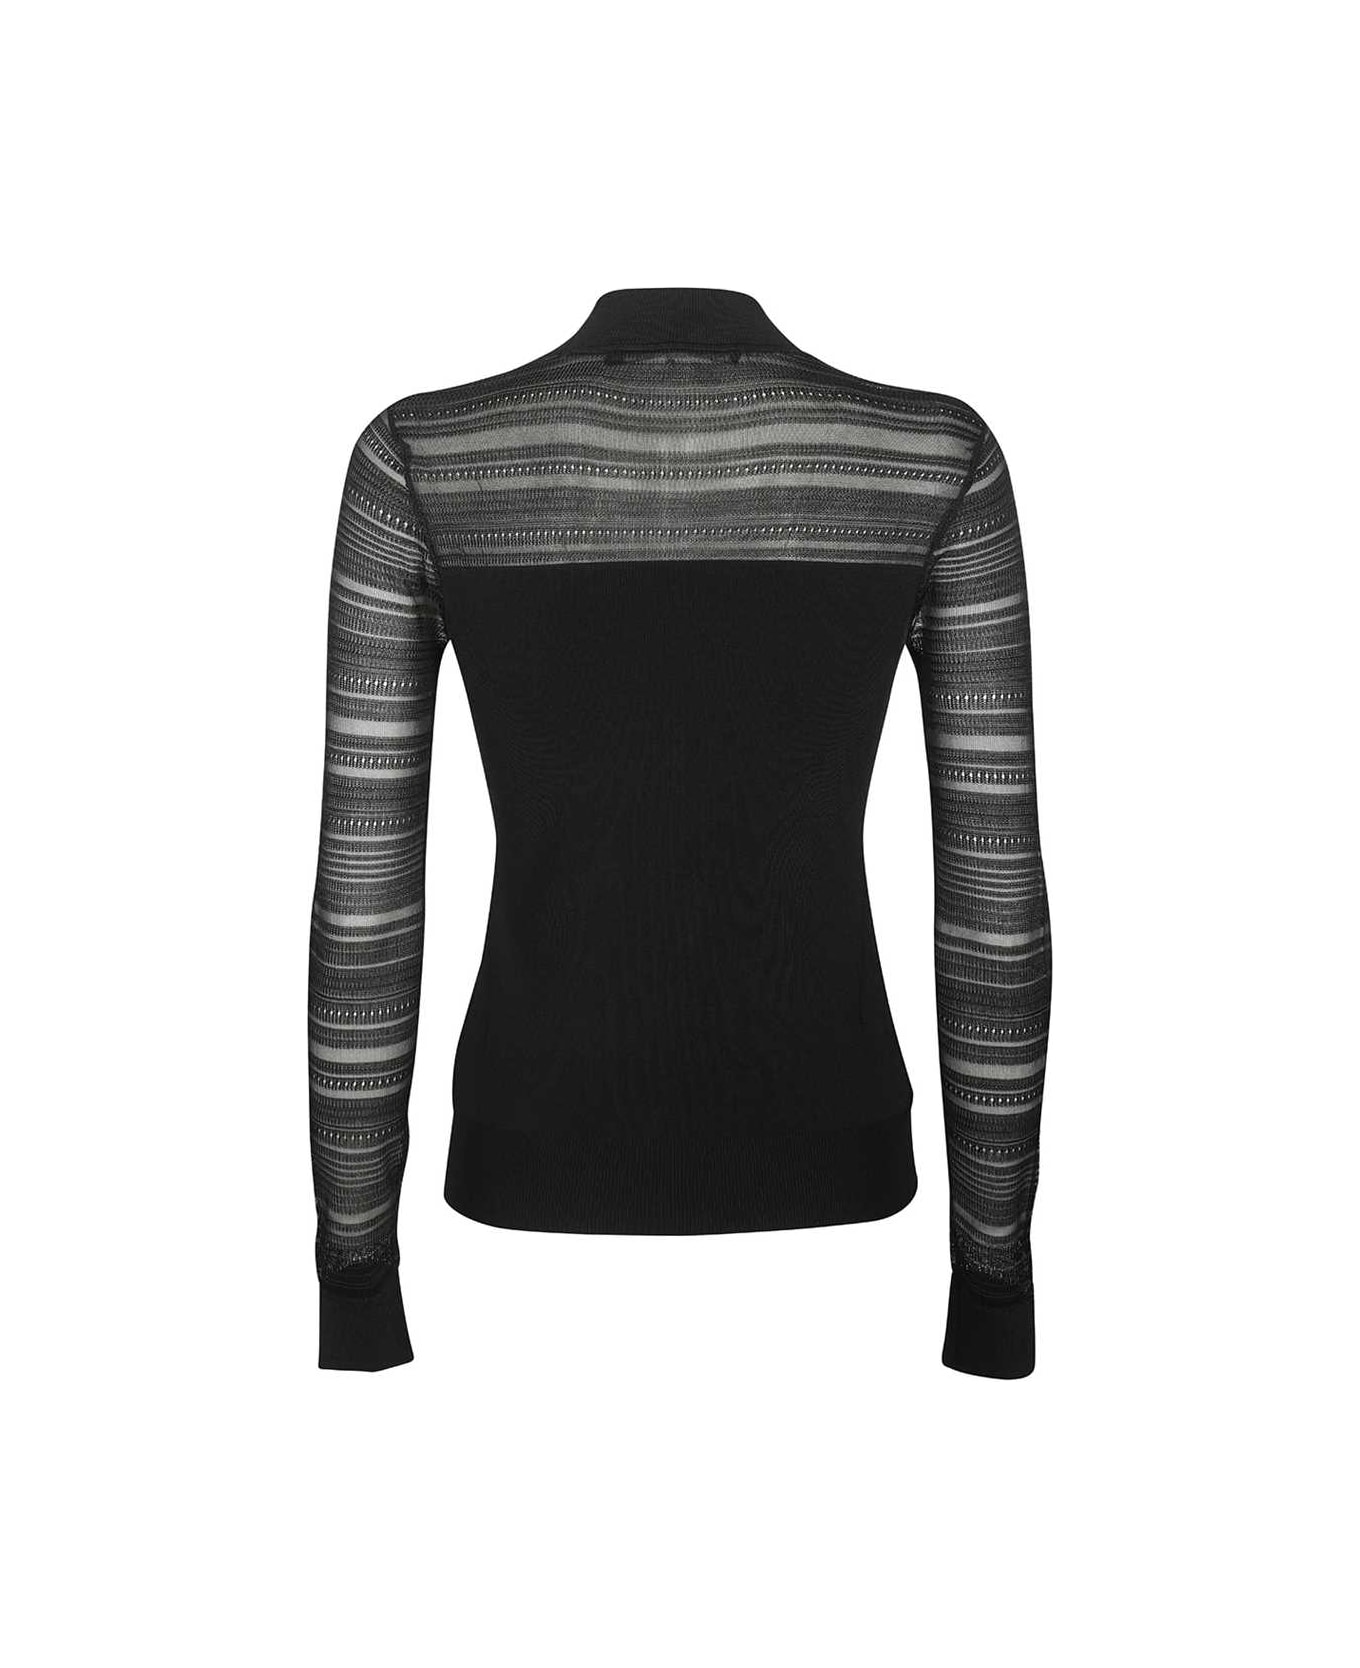 Karl Lagerfeld Turtleneck Sweater - black ニットウェア